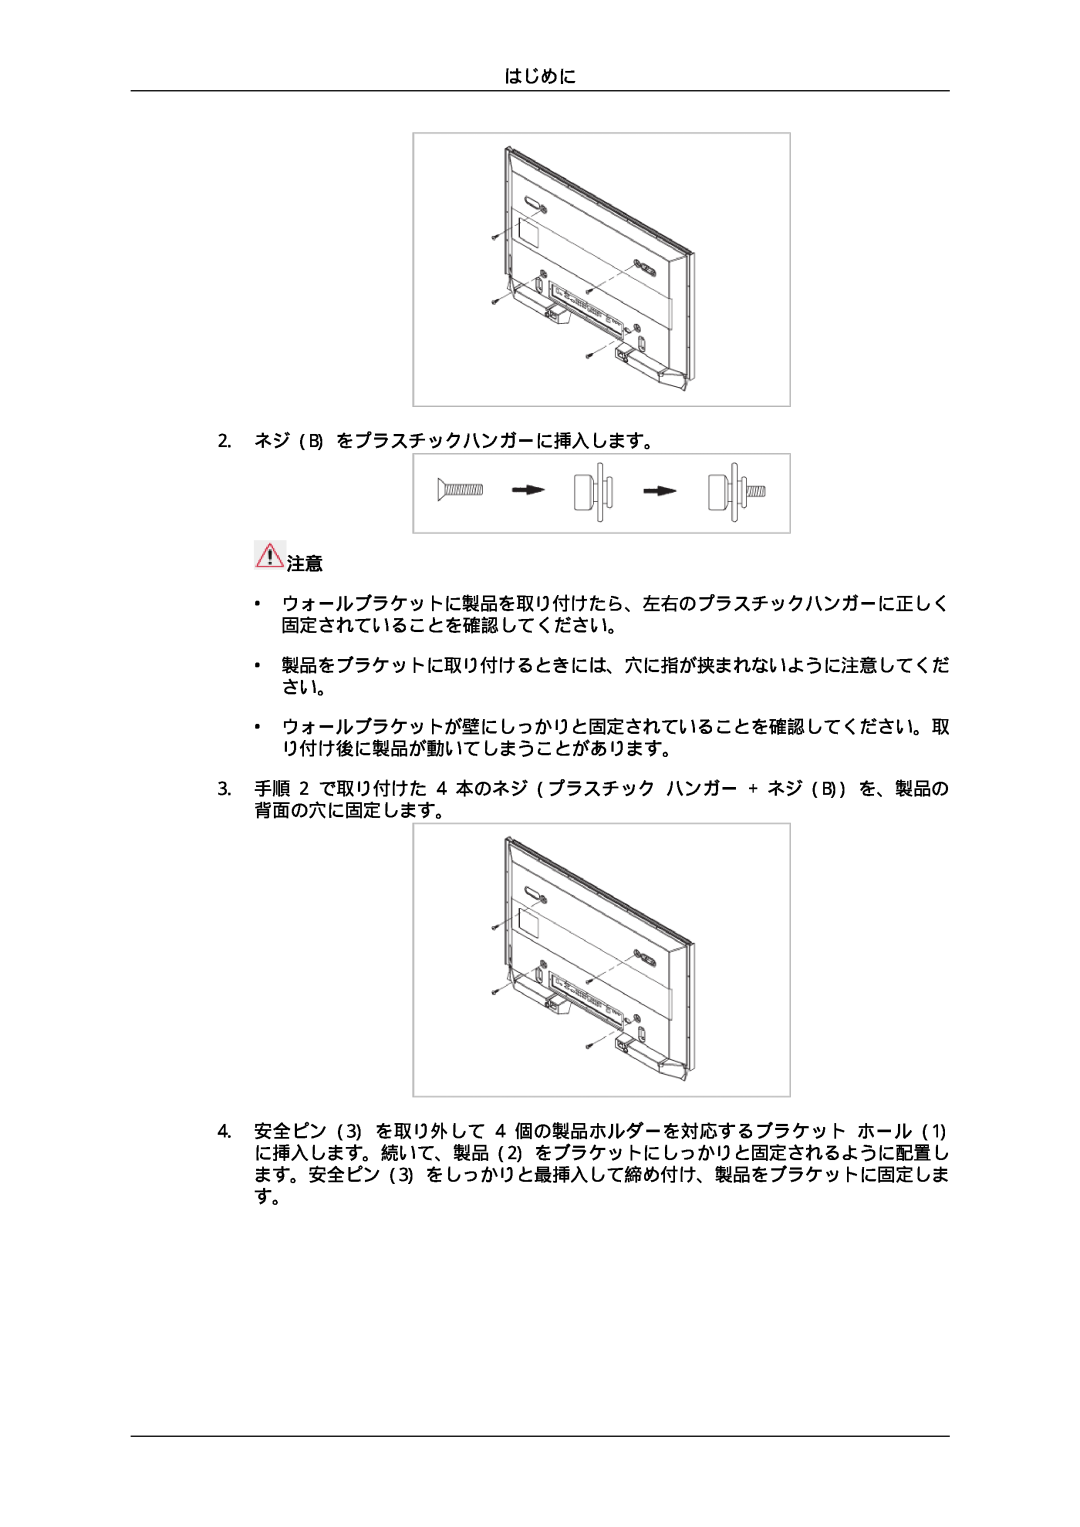 Samsung LH46CKTLBB/XJ manual はじめに 2. ネジ B をプラスチックハンガーに挿入します。, ウォールブラケットに製品を取り付けたら、左右のプラスチックハンガーに正しく 固定されていることを確認してください。 